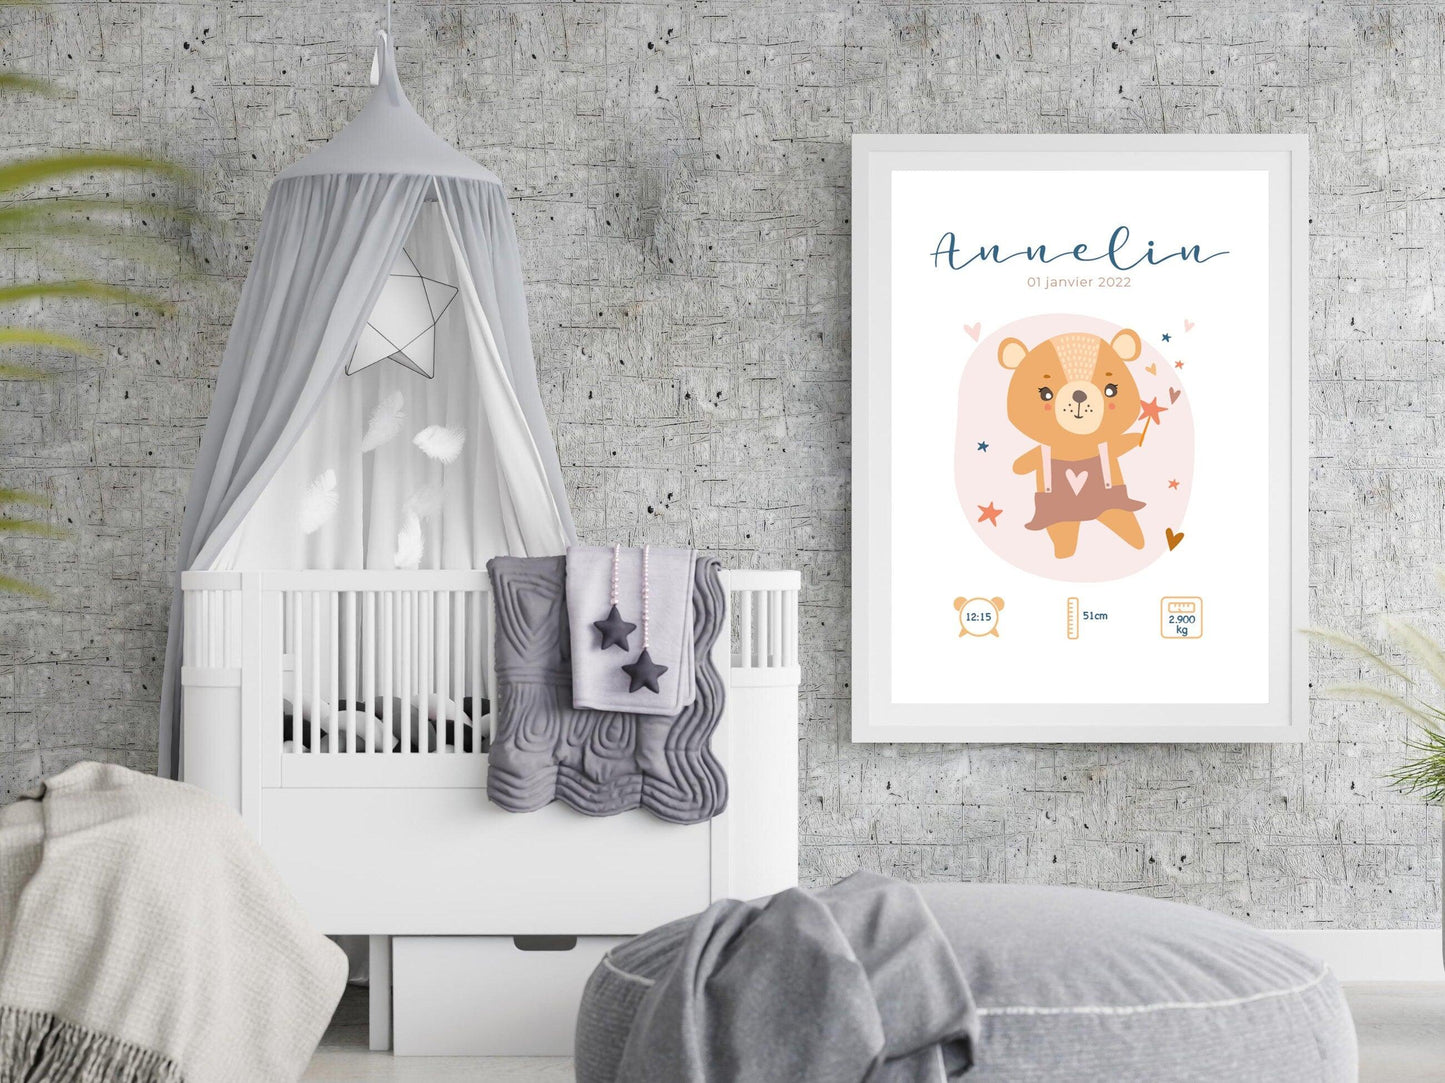 Affiche de naissance personnalisée "Ourson" idée cadeau souvenir avec Prénom poids taille et heure en Décoration chambre enfants bébé - Imagine.affiche